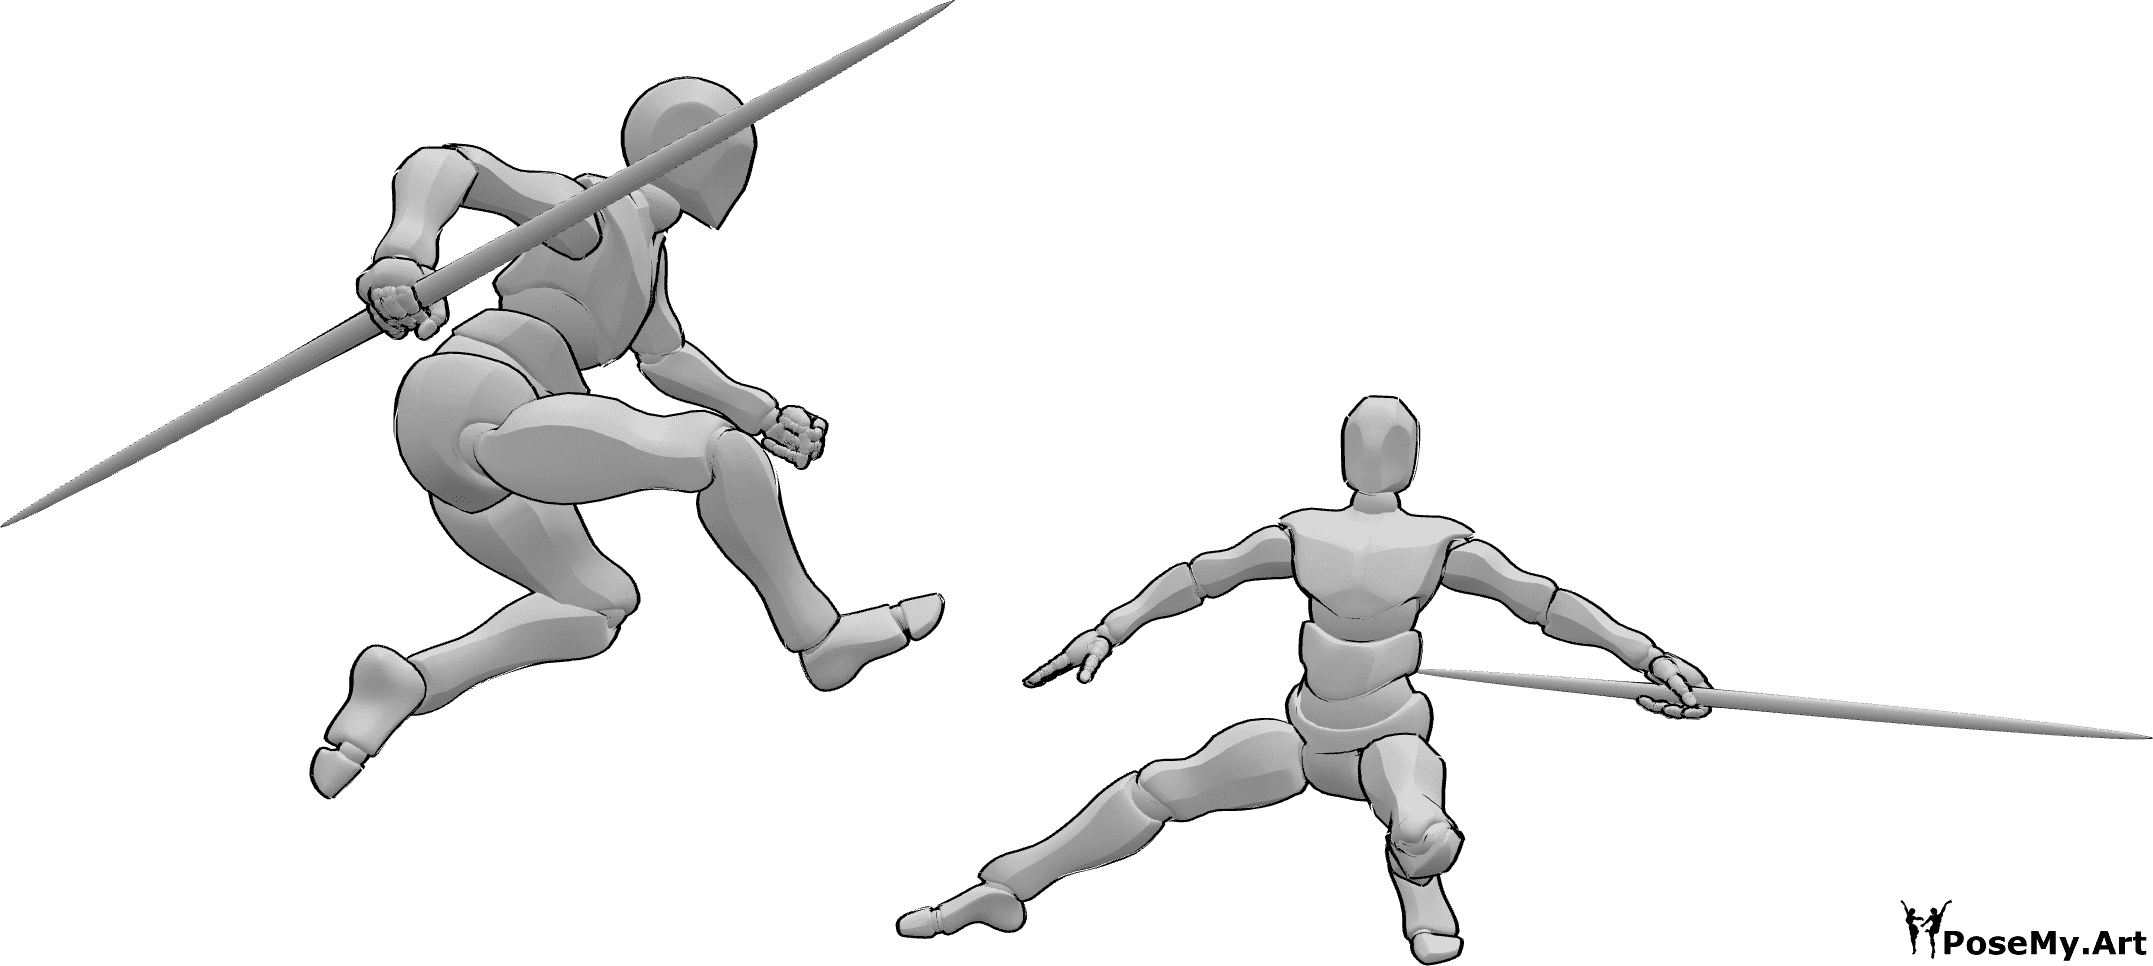 Posen-Referenz- Kampfstäbe springen in Pose - Zwei Männer kämpfen mit Stöcken, einer von ihnen springt in Pose